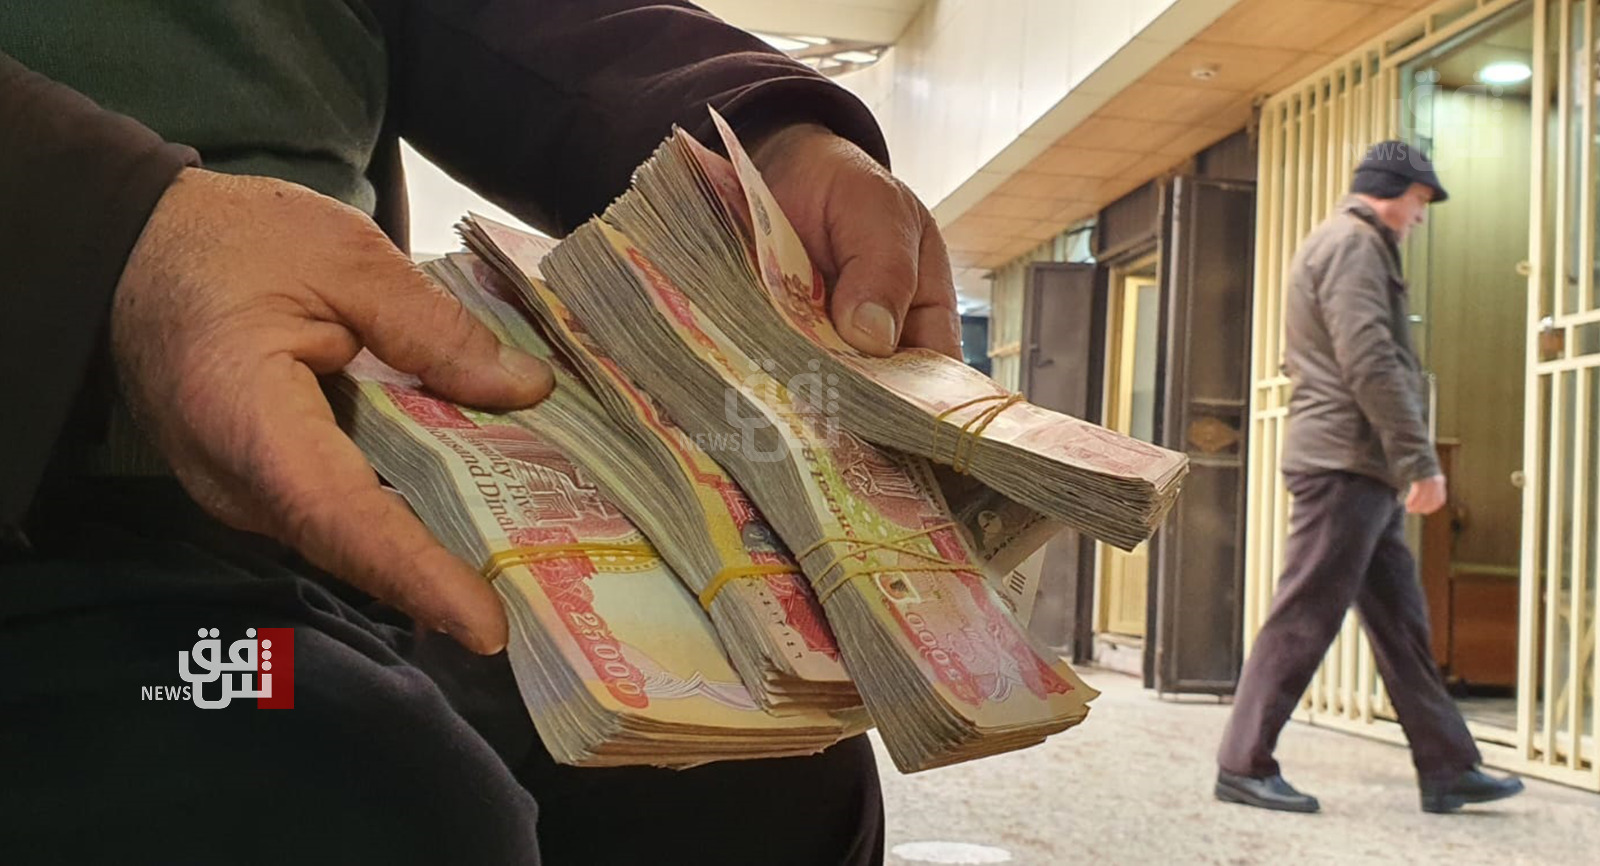 مالية إقليم كوردستان تنأى بنفسها عمّا رافق توزيع الرواتب بالسليمانية من "تمييز وطبقية"